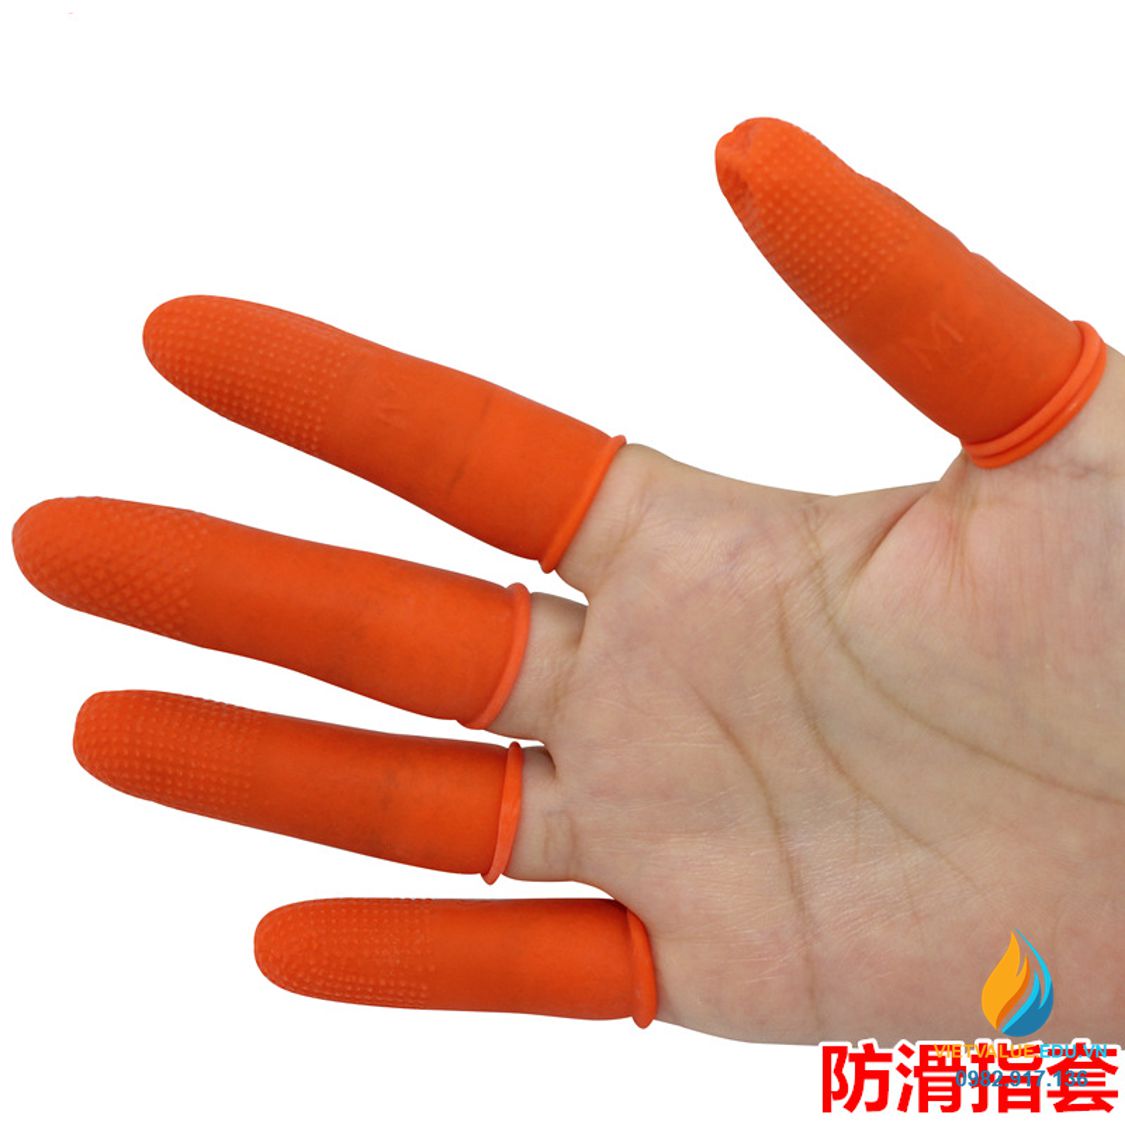 Bộ 3 chiếc gang tay xỏ ngón dùng 1 lần đầu sần, chống tĩnh điện, túi 500 gam